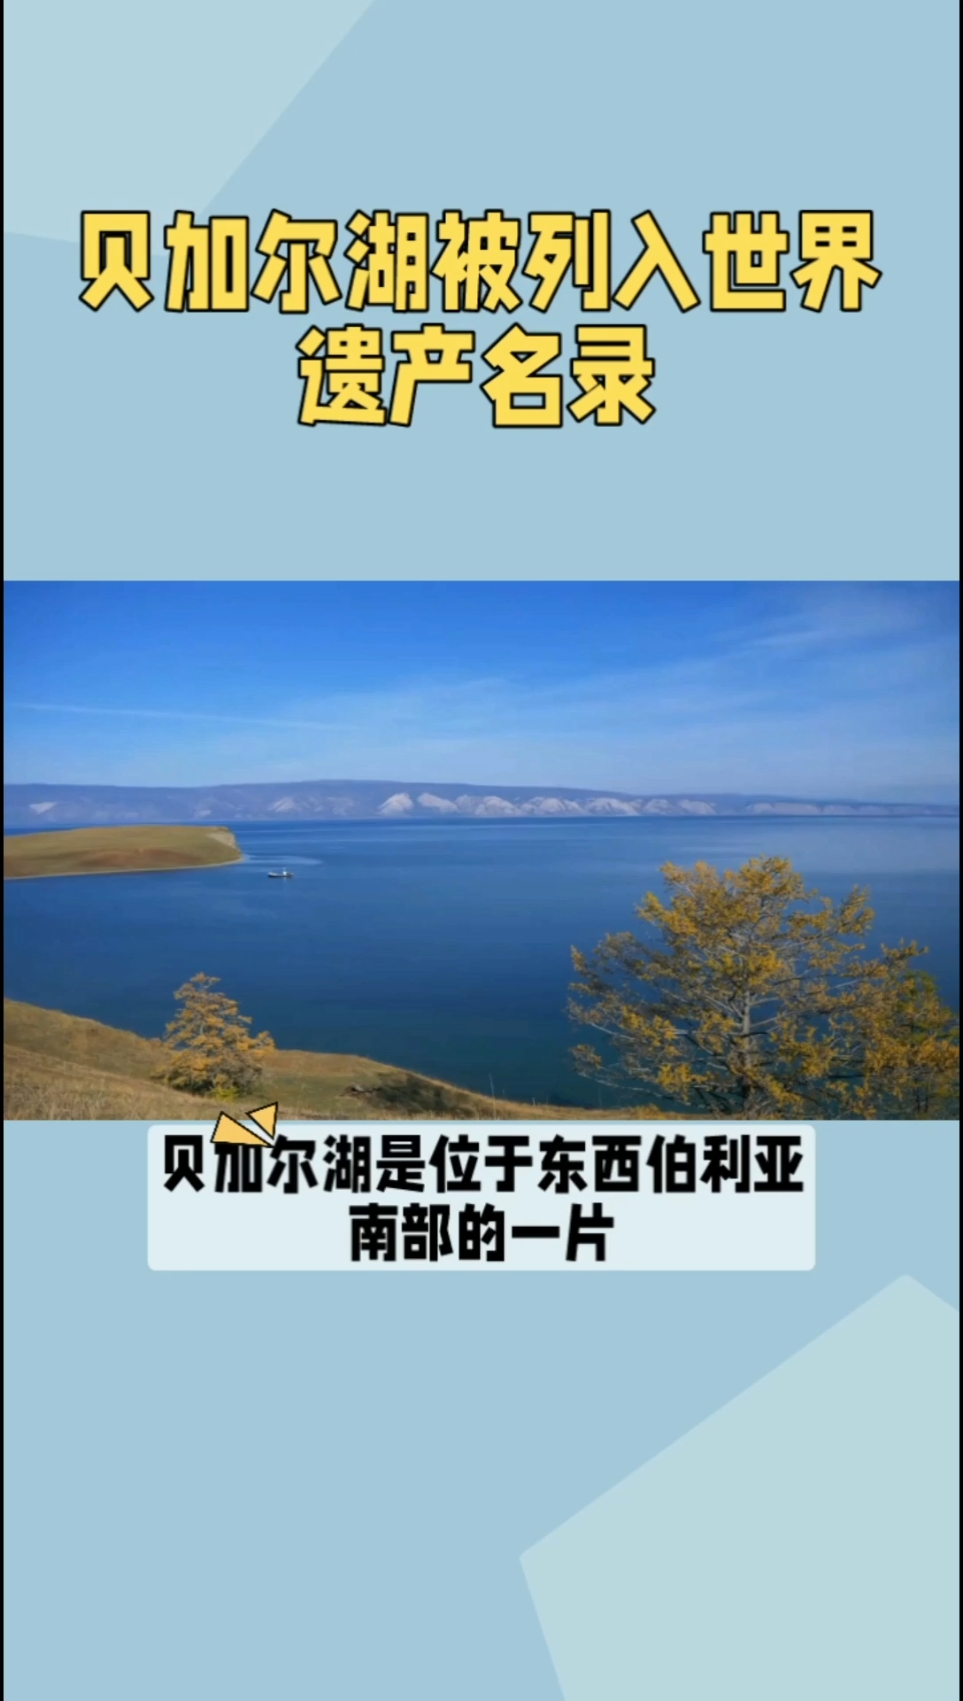 贝加尔湖：世界遗产名录中的璀璨明珠